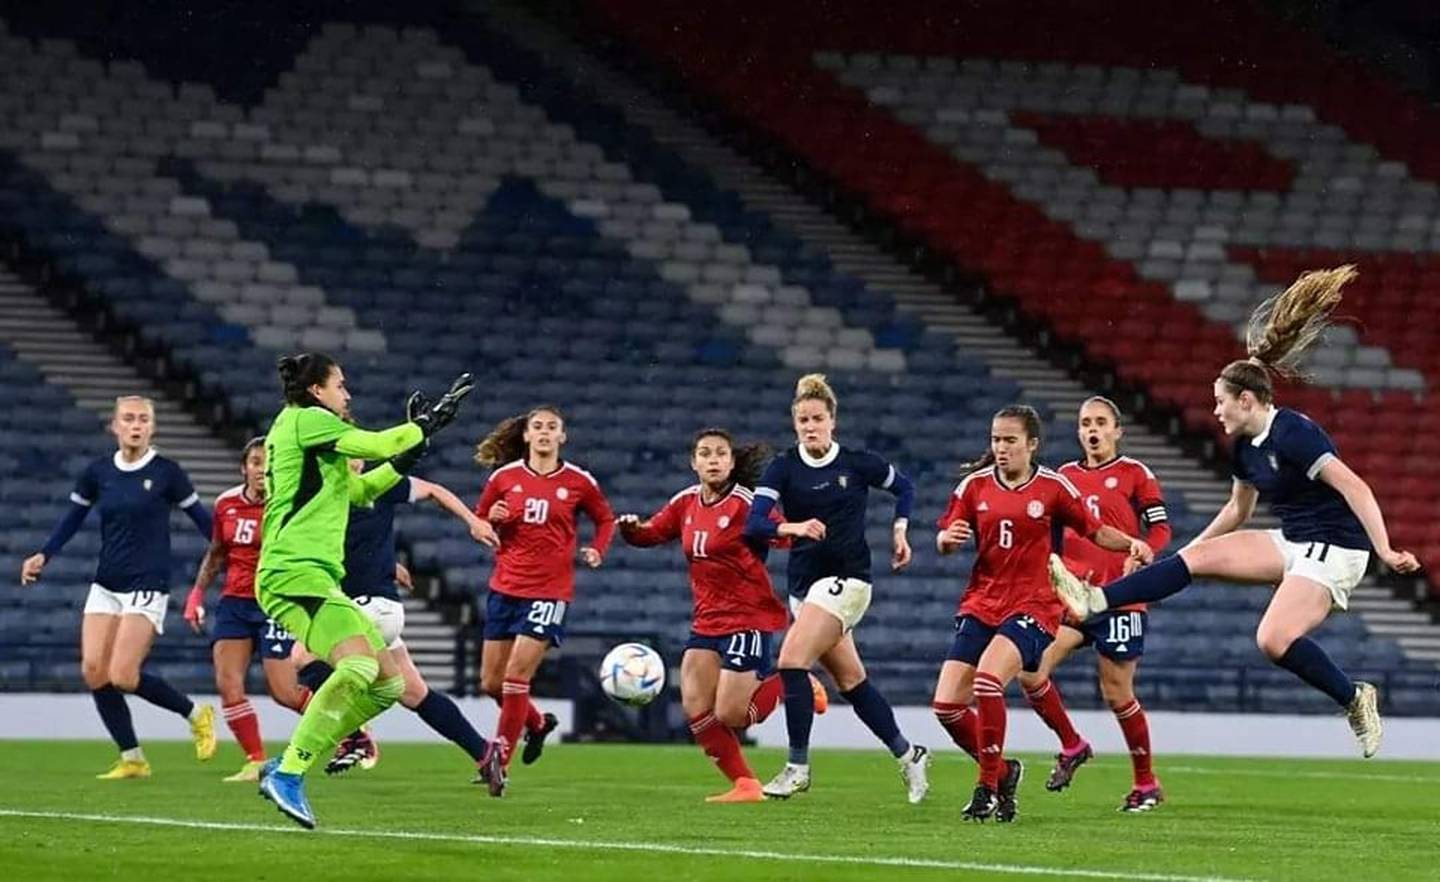 La Selección Femenina cayó goleada ante Escocia 4-0. Prensa Fedefútbol.